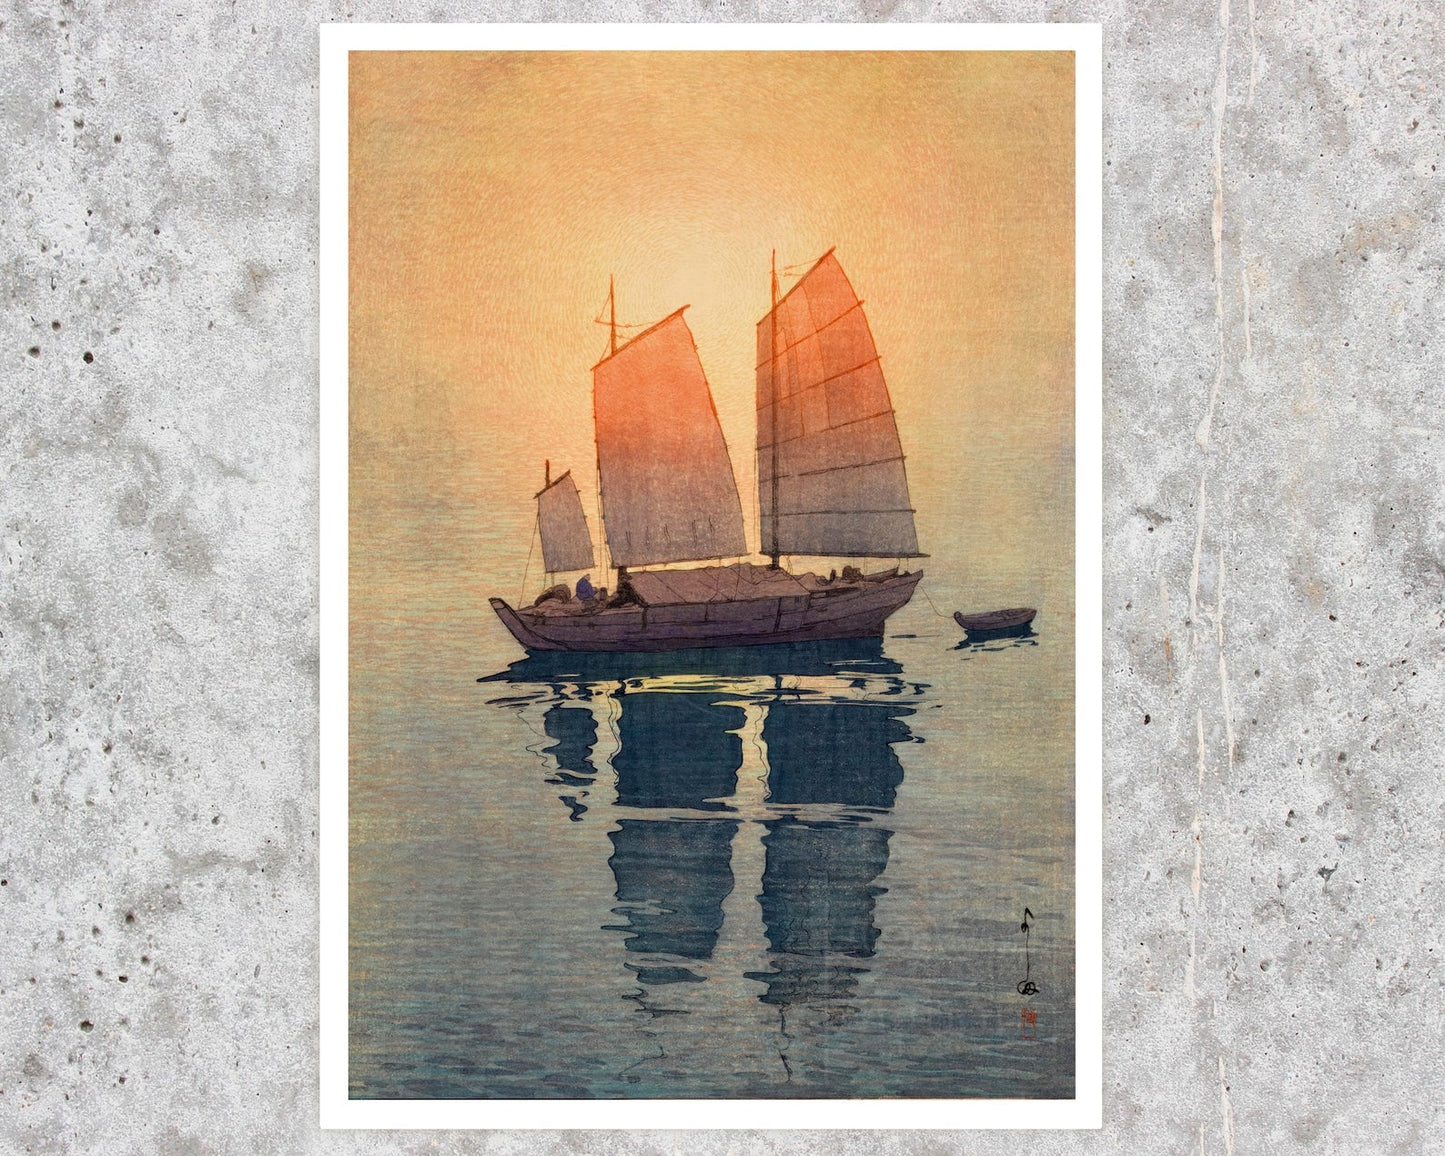 Yoshida Hiroshi "Sailboats: The Seto Inland Sea Series" - Set of 4 Prints - Mabon Gallery